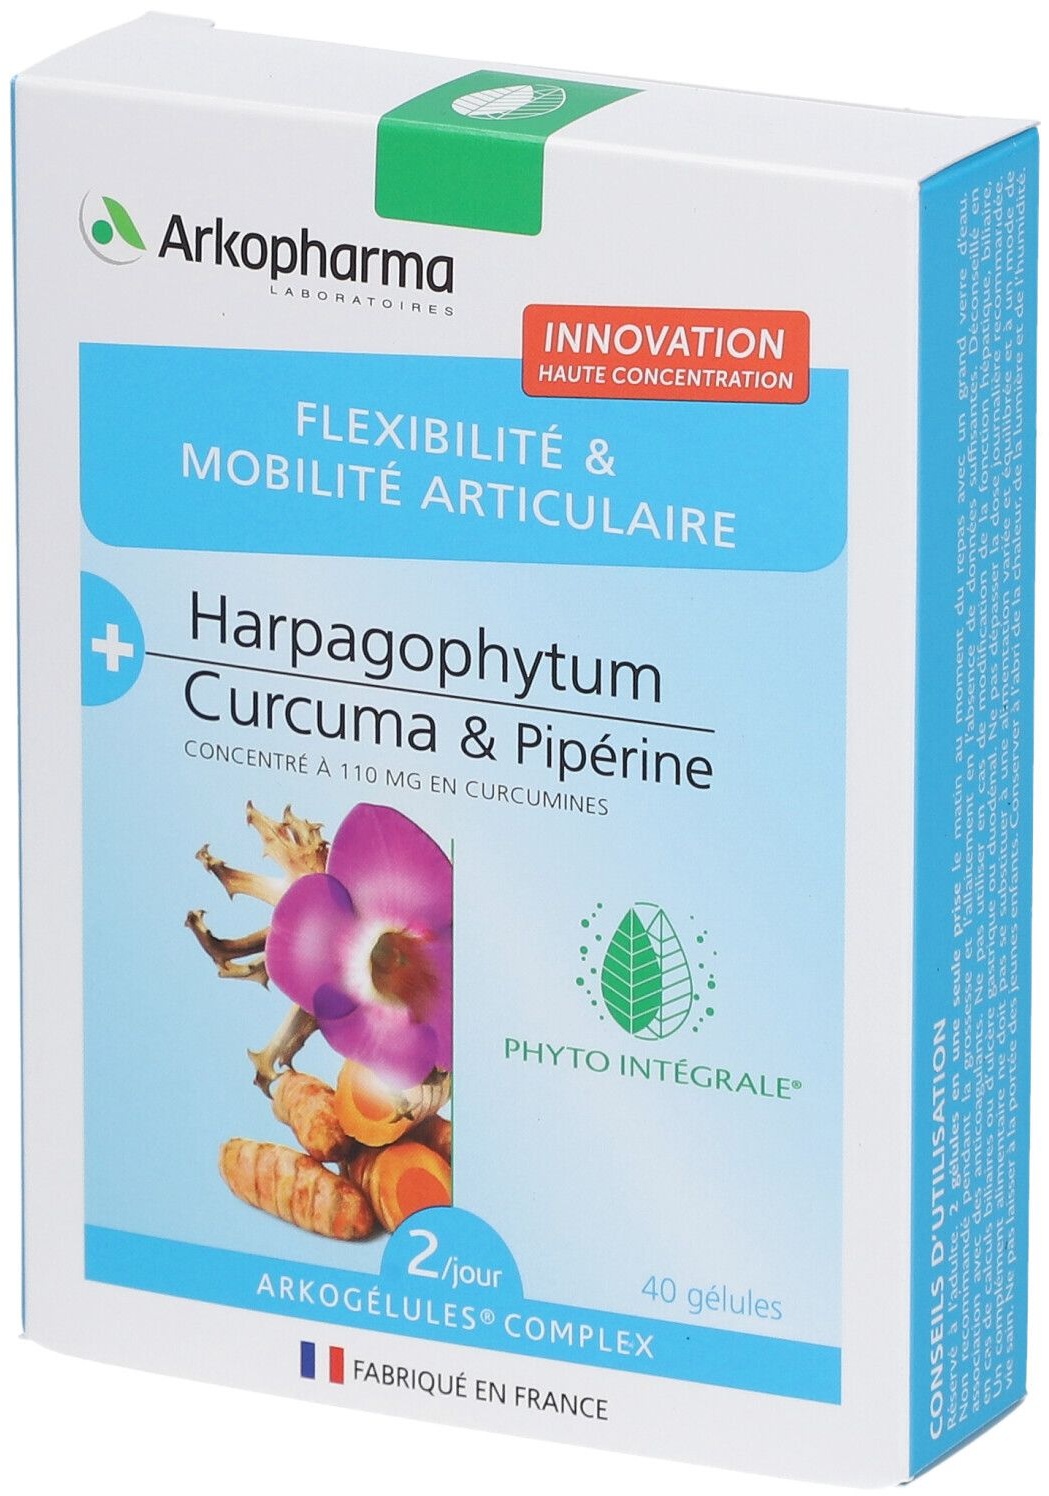 ARKOPHARMA Flexibilité et mobilité articulaire bio Harpagophytum, Curcuma & Pipérine 40 pc(s) capsule(s)